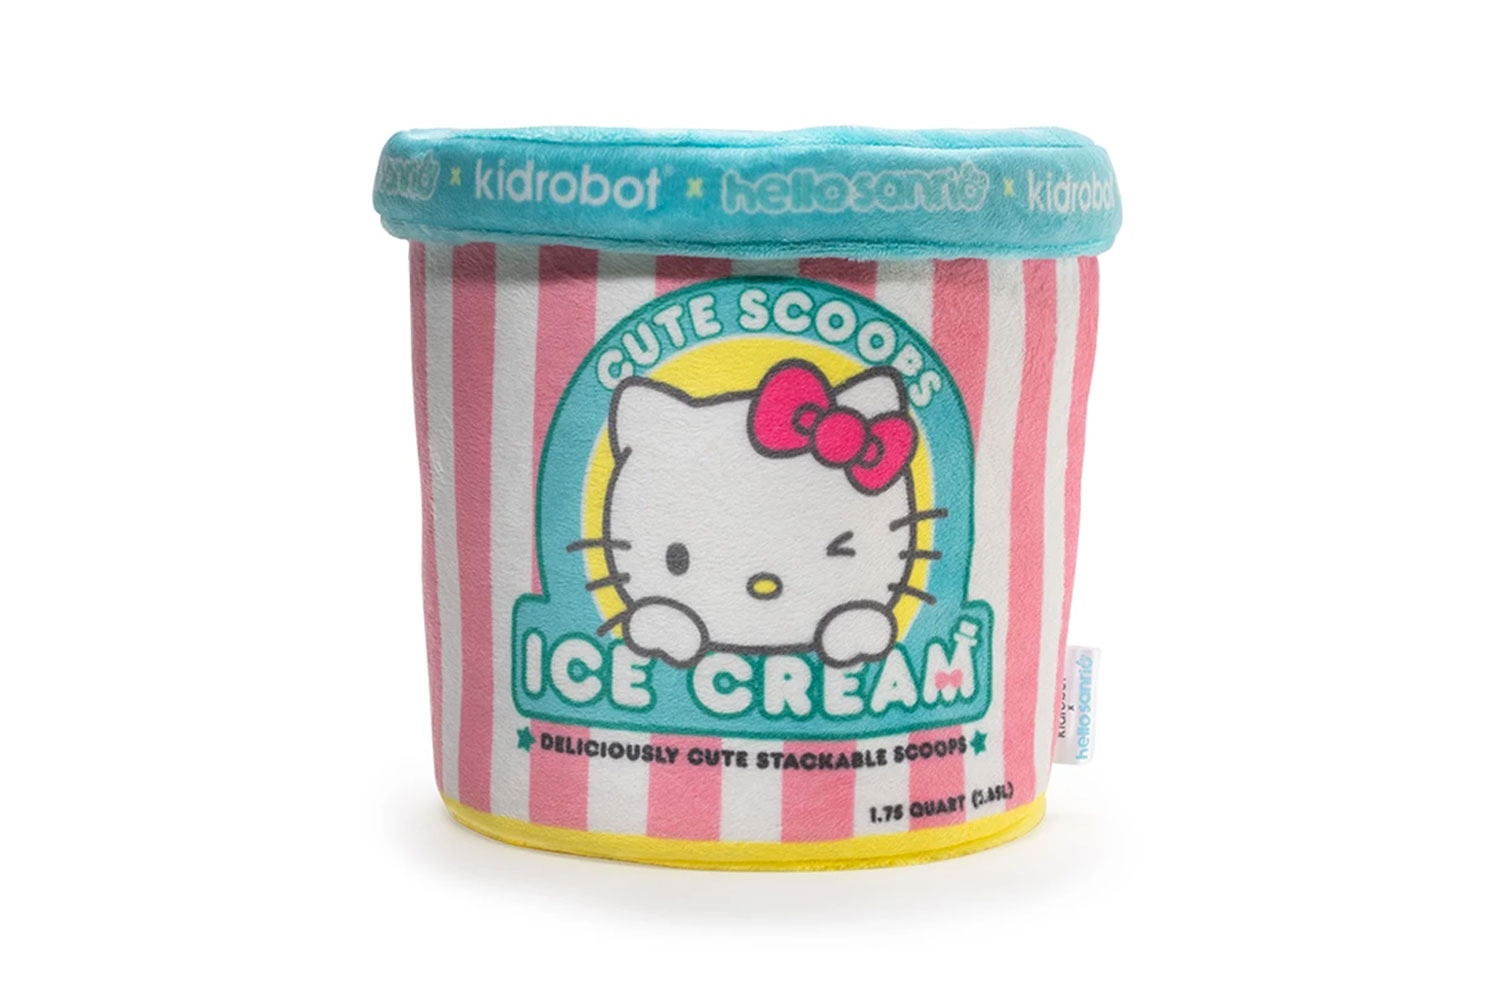 sanrio kidrobot plush toy ice cream hello kitty Badtz-Maru Keroppi Pompompurin